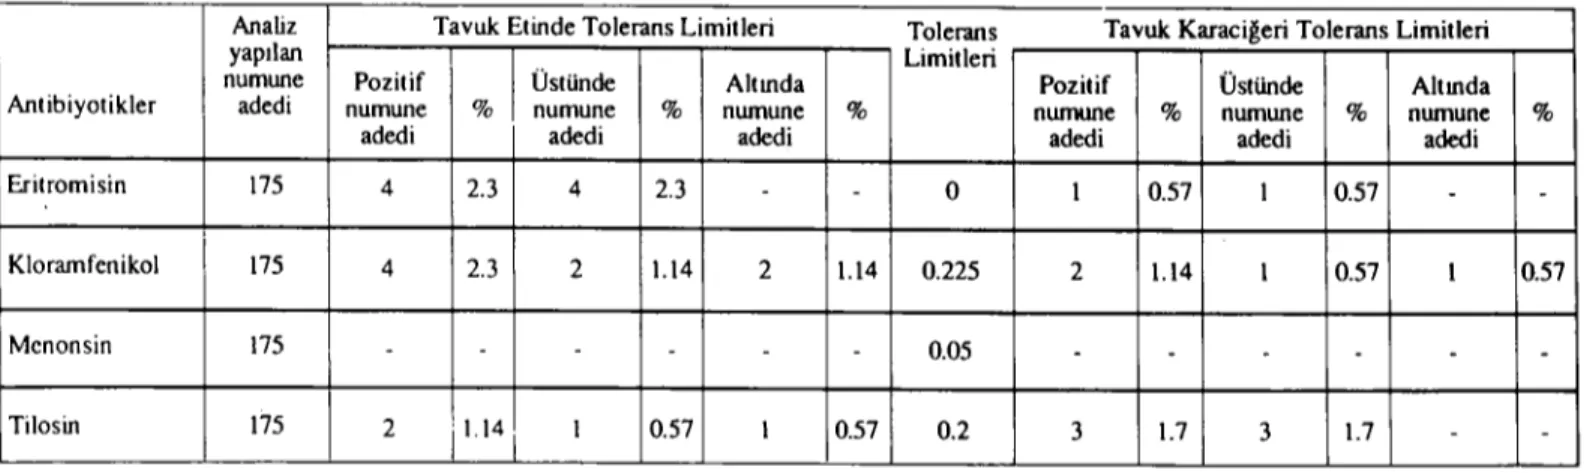 Tablo 3: Analizlerde bulunan pozitif sonuçlann tolerans limitlerine göre karşılaştırılması.